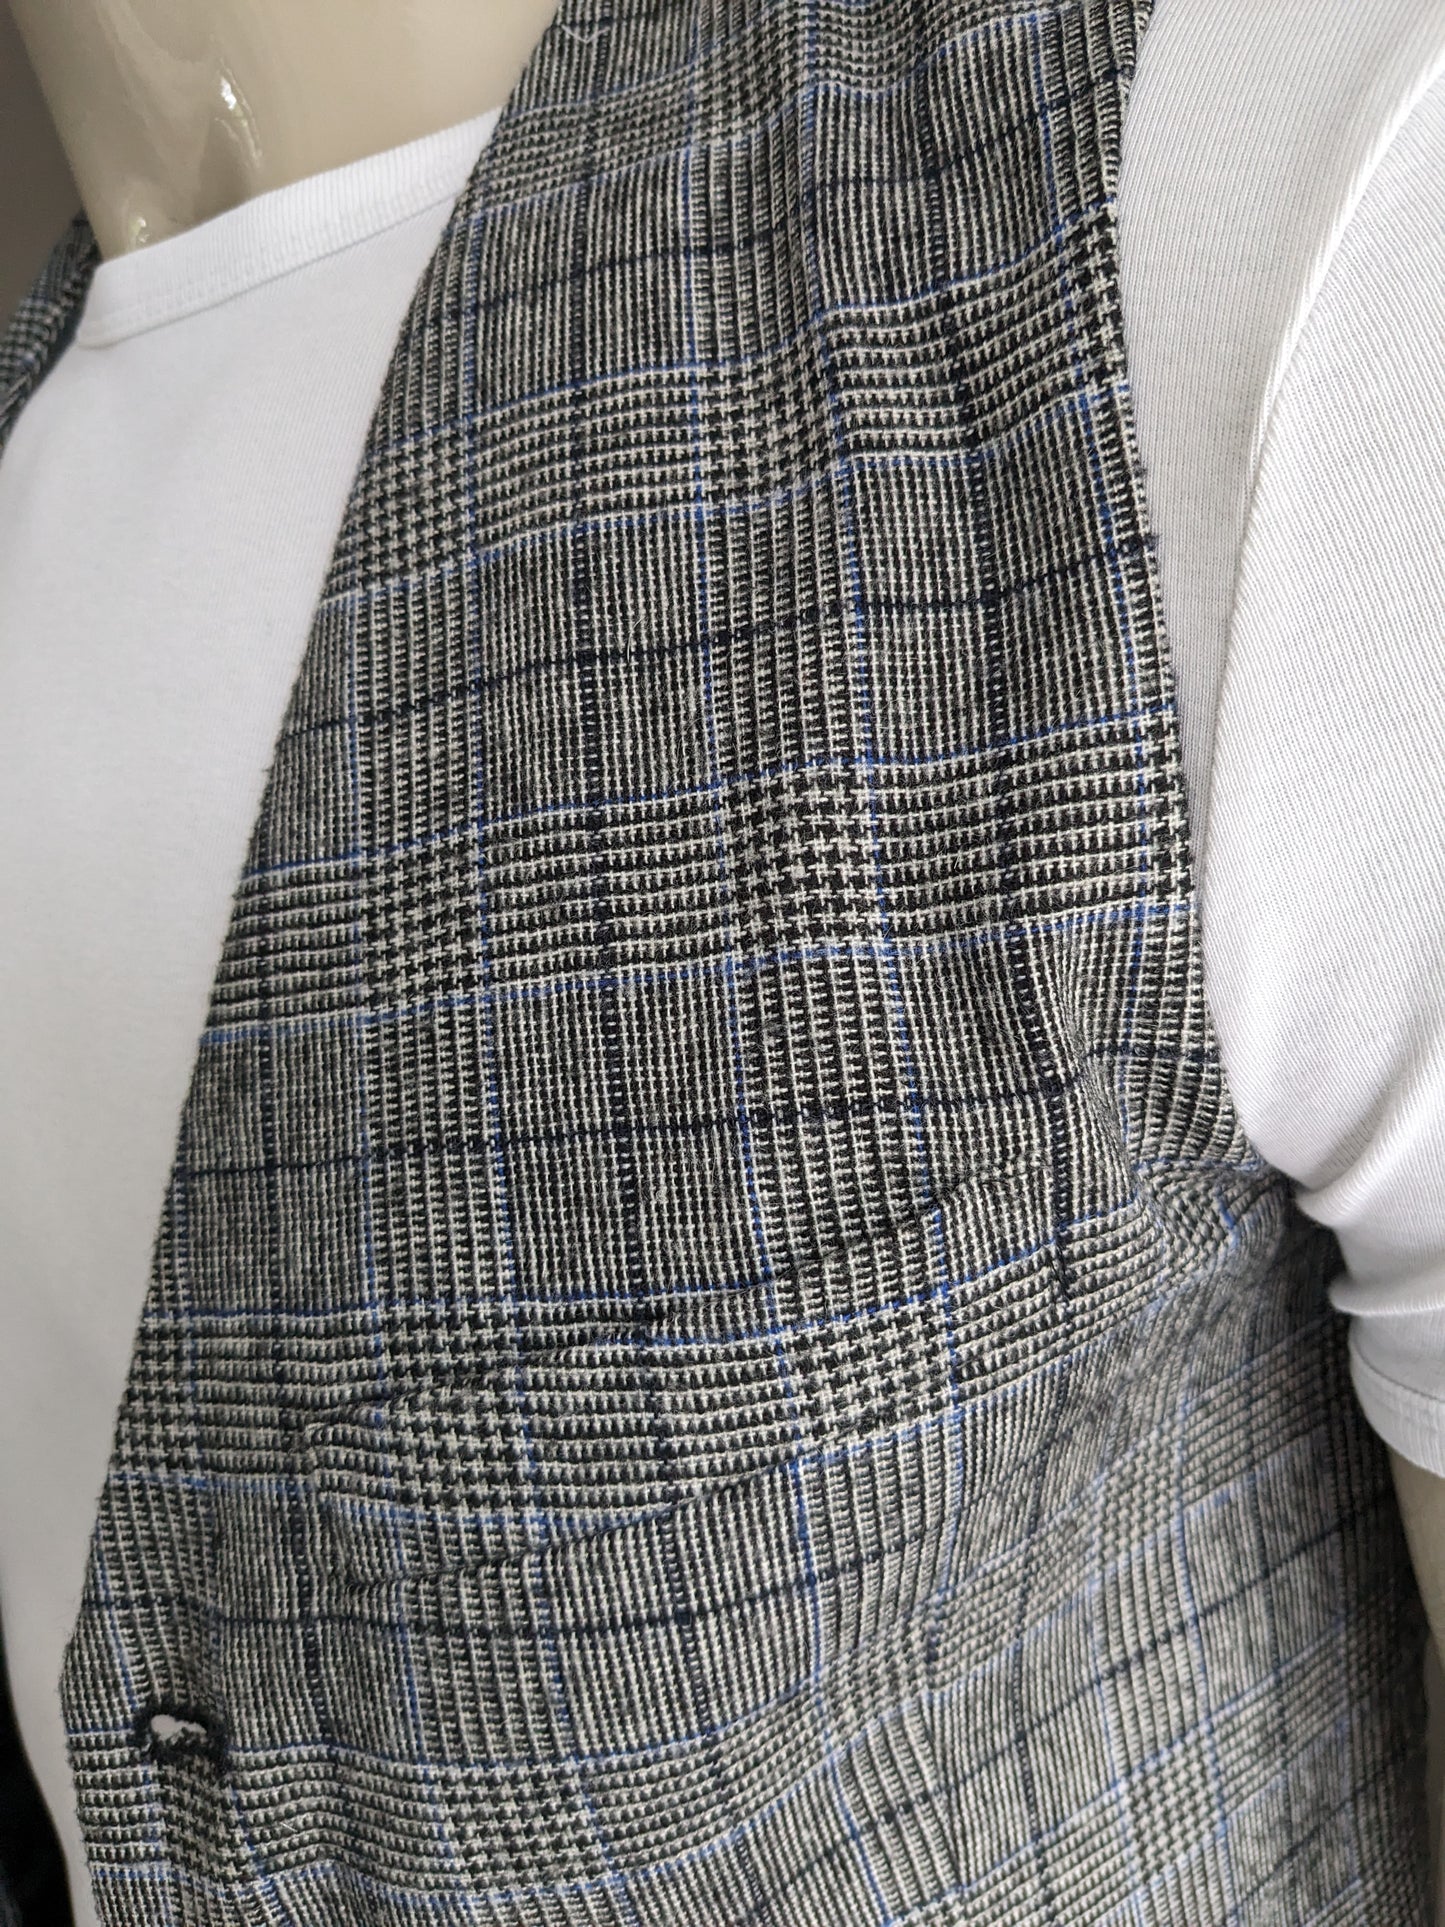 Gilet en laine PDG. Bleu noir gris vérifié. Taille S.